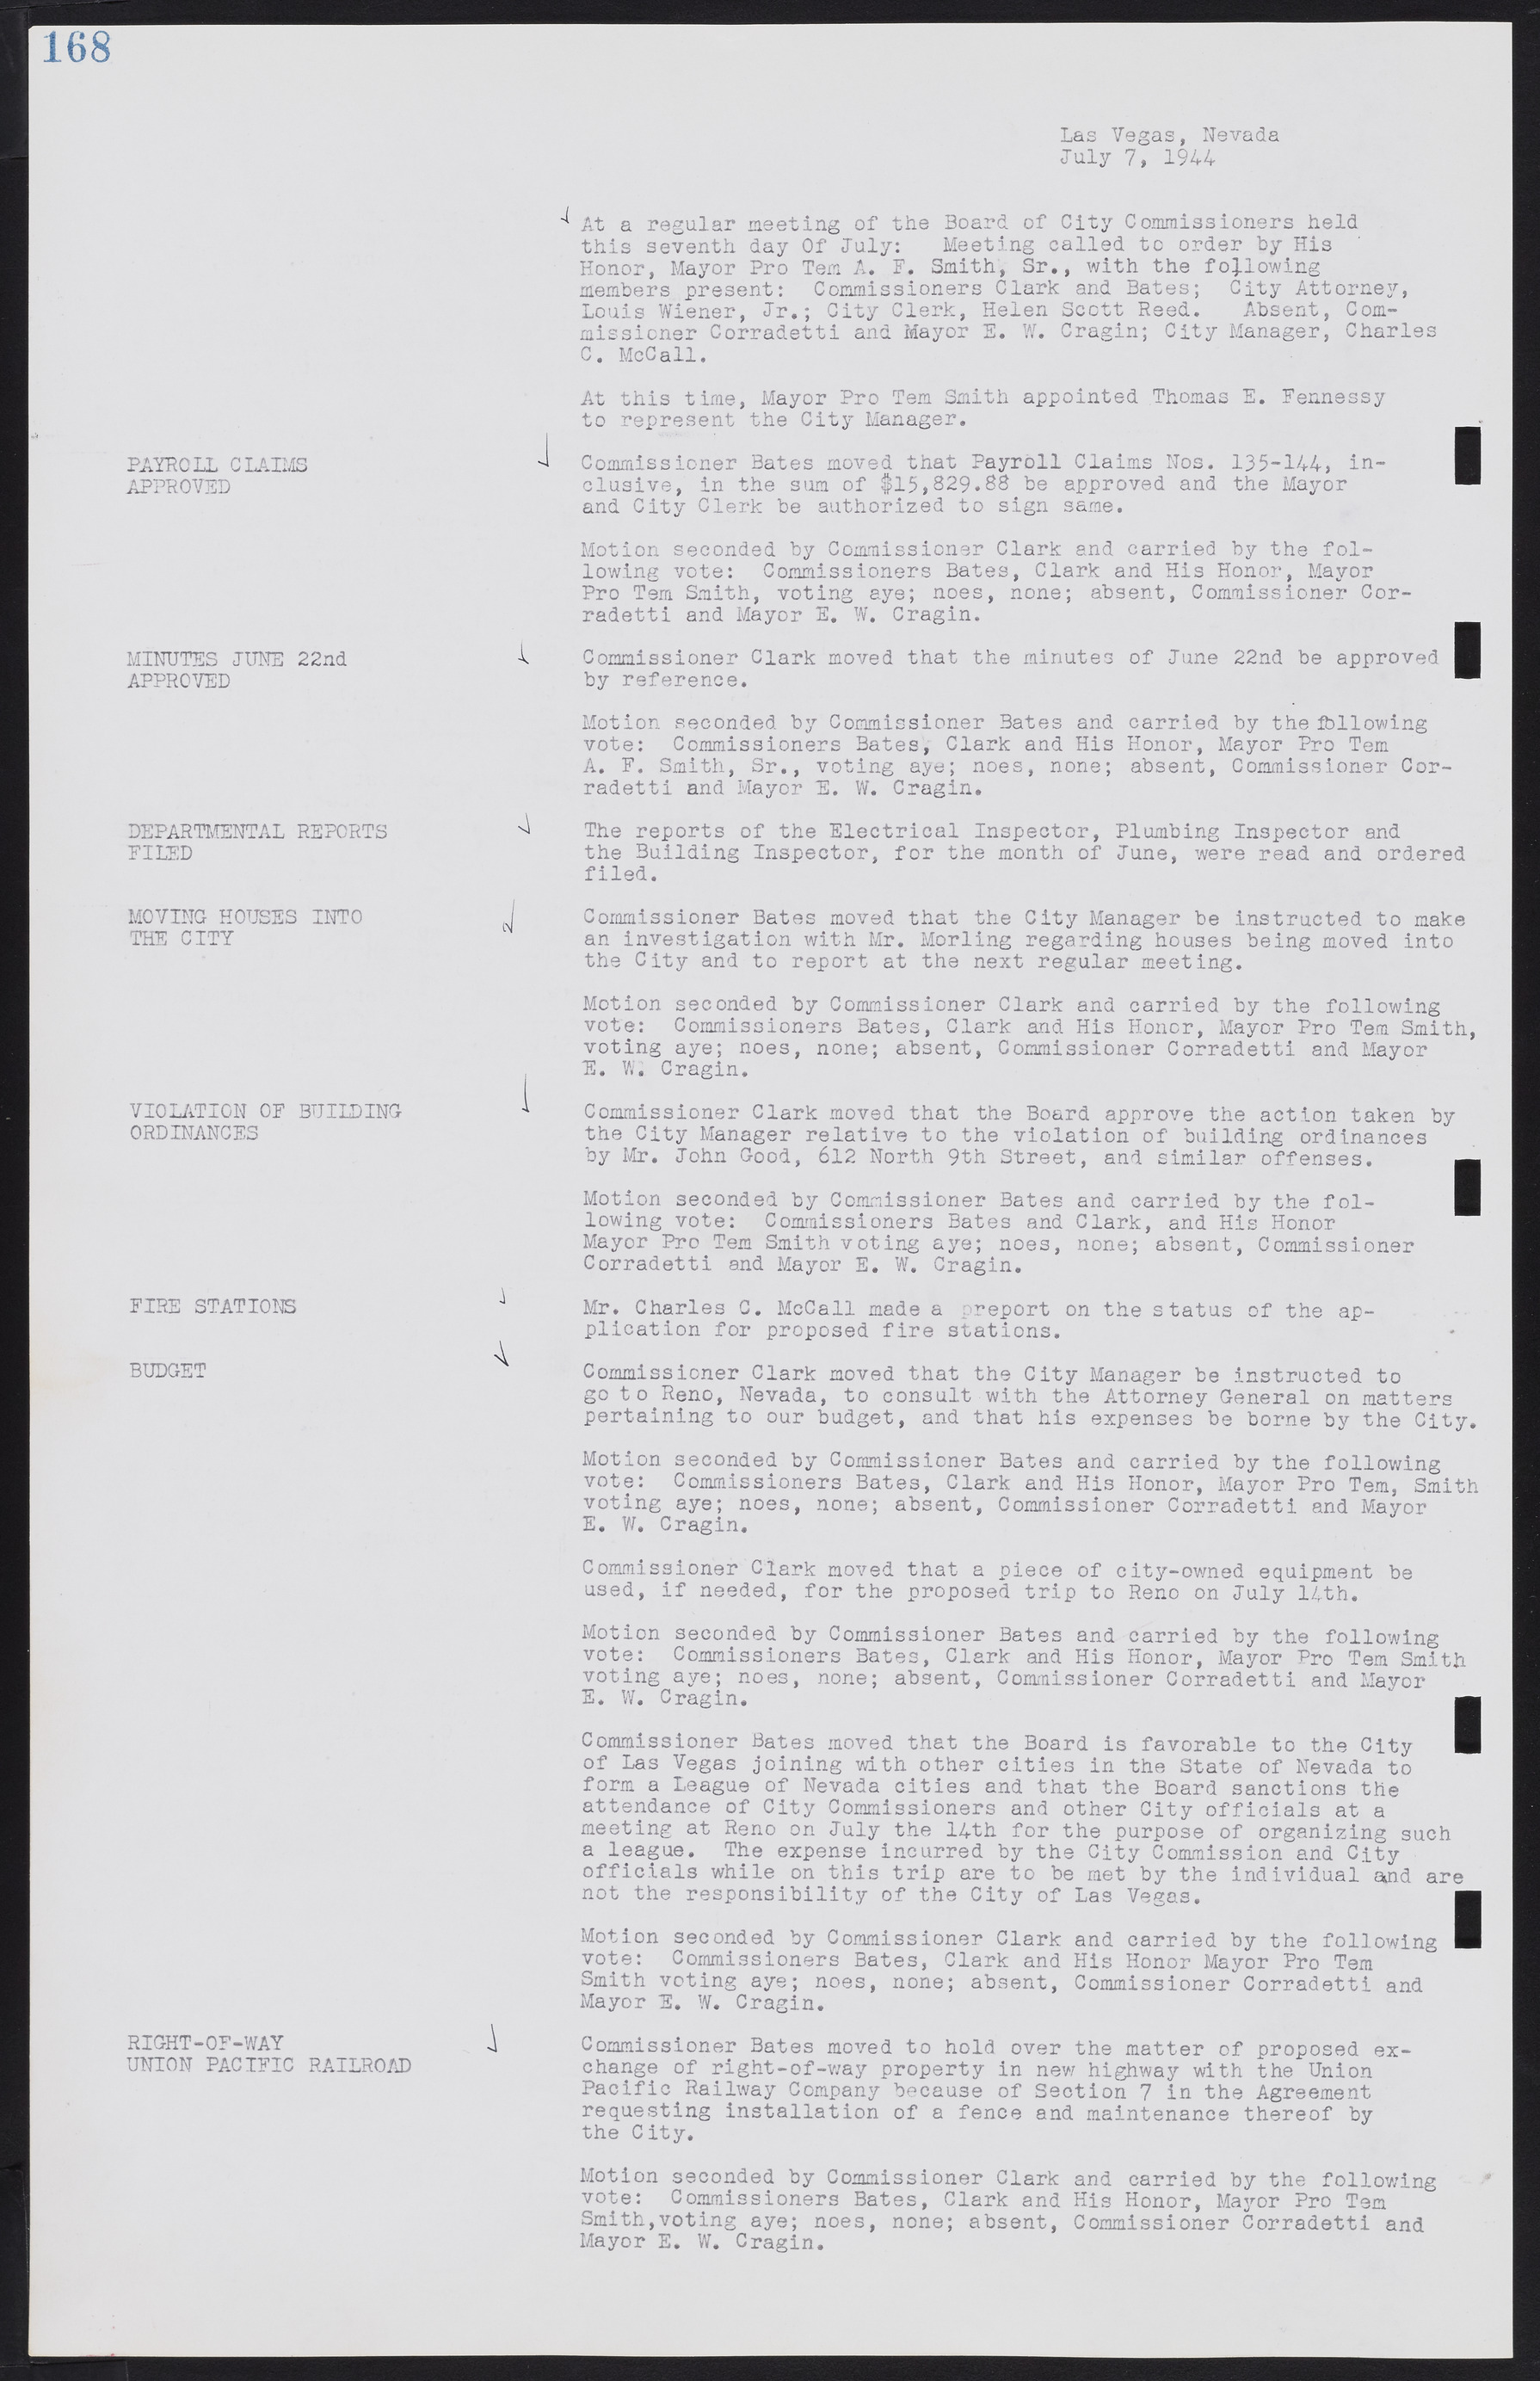 Las Vegas City Commission Minutes, August 11, 1942 to December 30, 1946, lvc000005-185